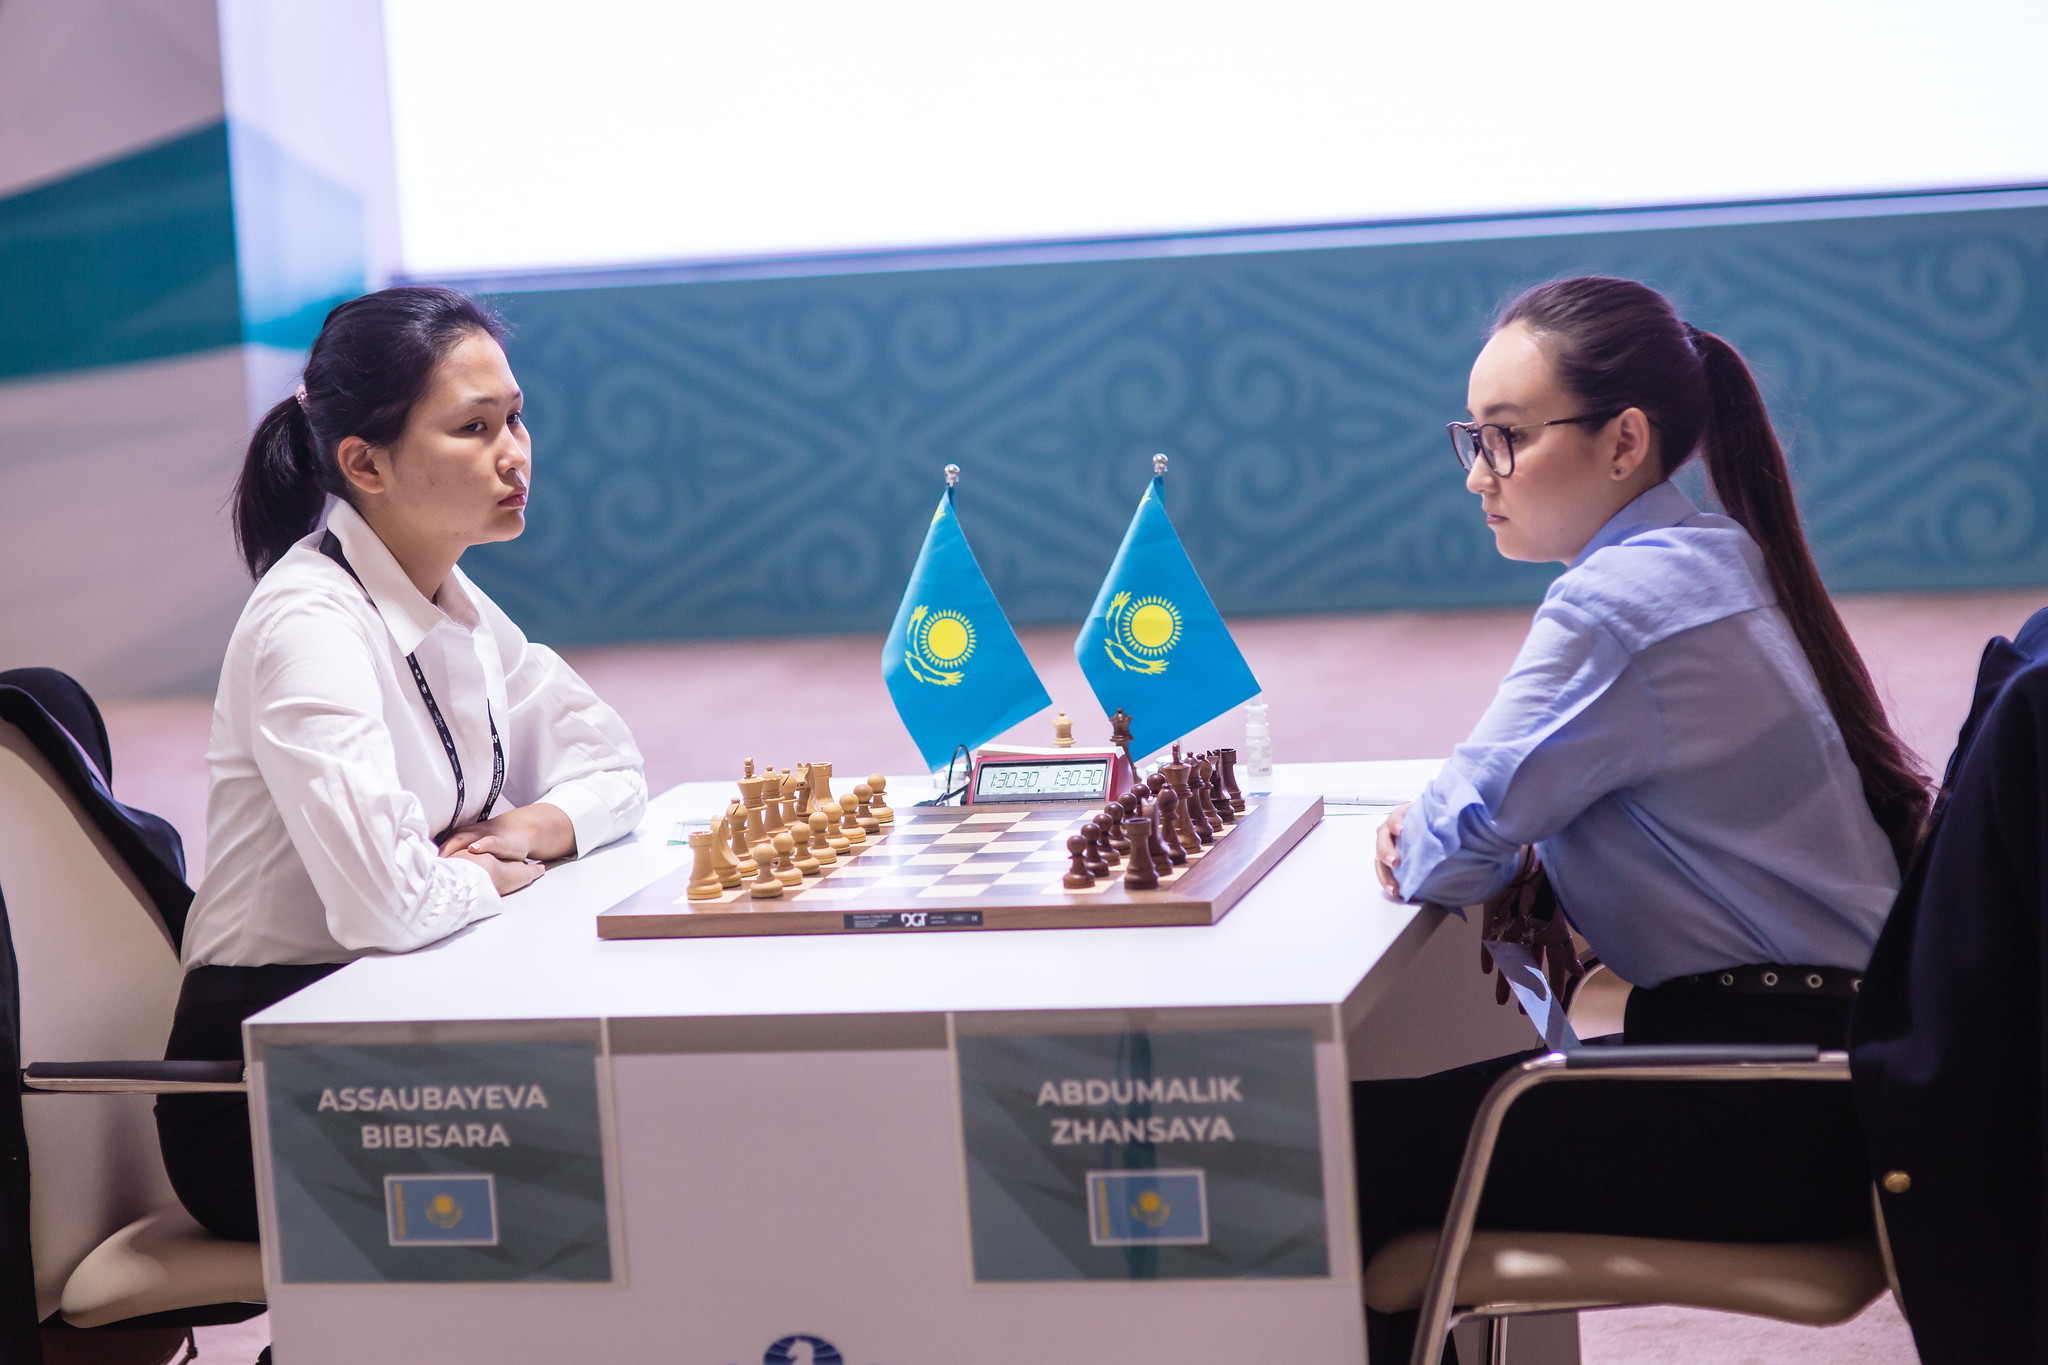 Шахматистка Асаубаева – о члене сборной Абдумалик: приукрашивать действительность – качество бывшего депутата